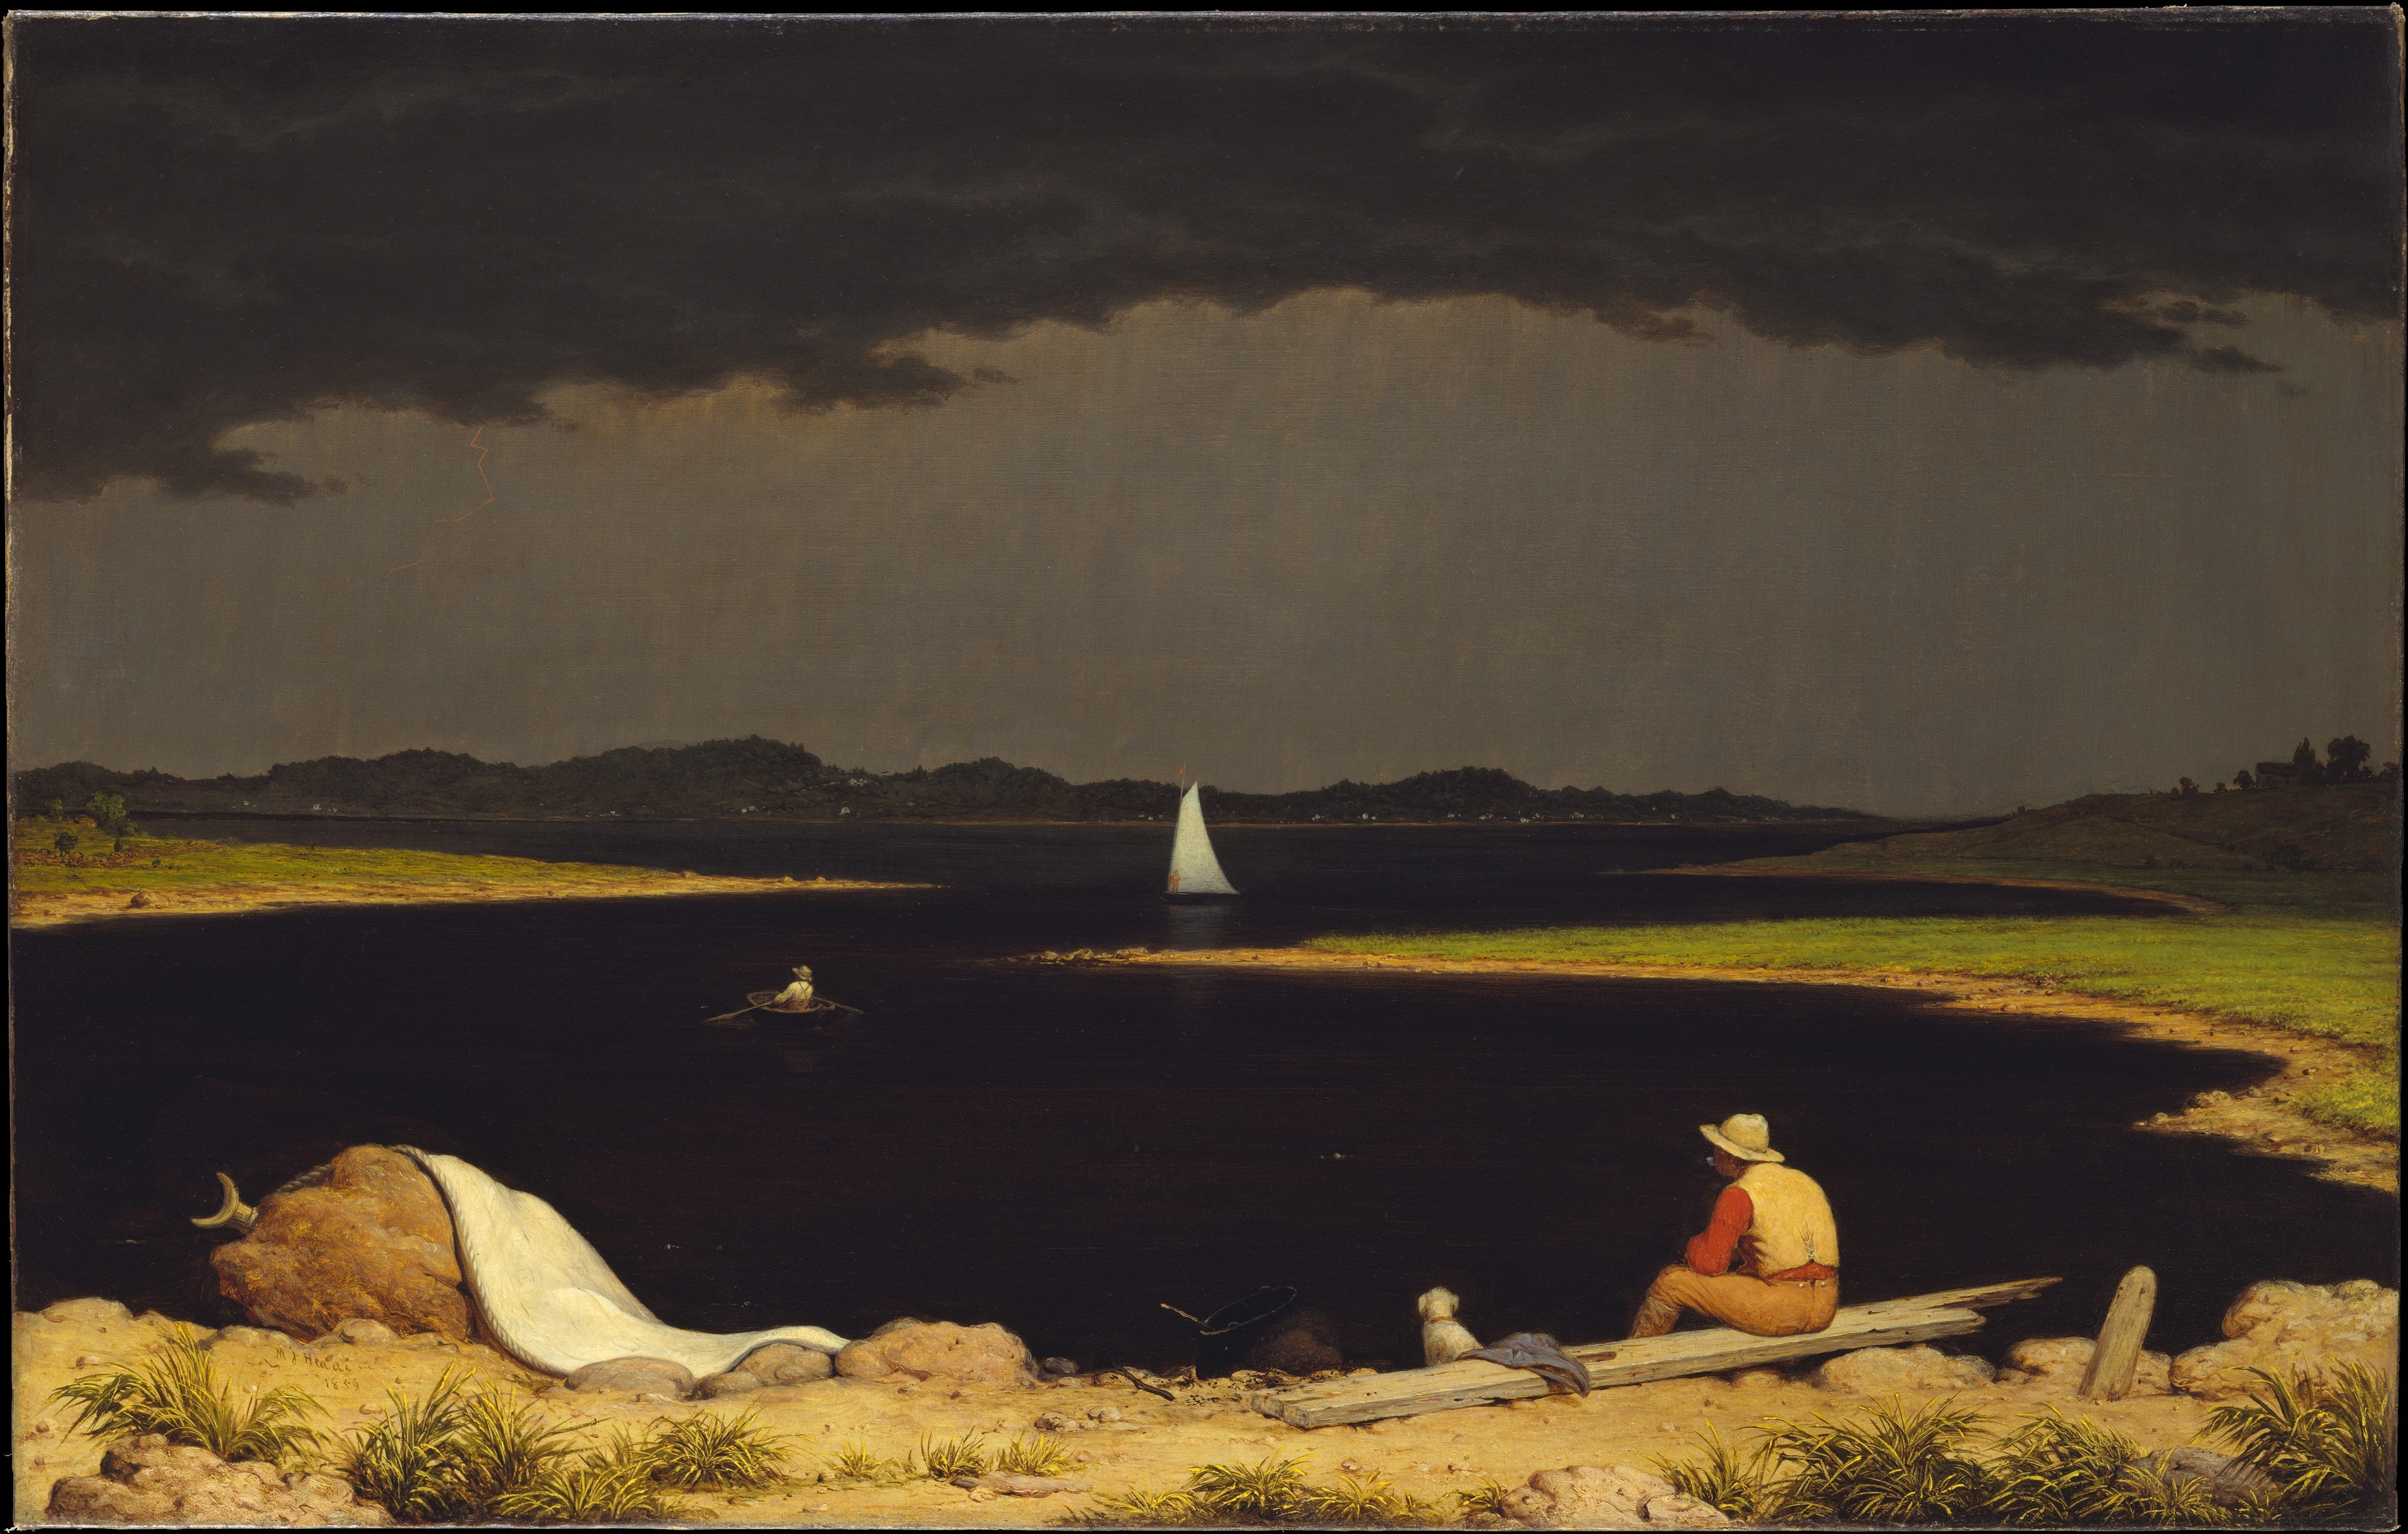 即將來臨的雷雨 by Martin Johnson Heade - 1859 - 71.1 x 111.8cm 